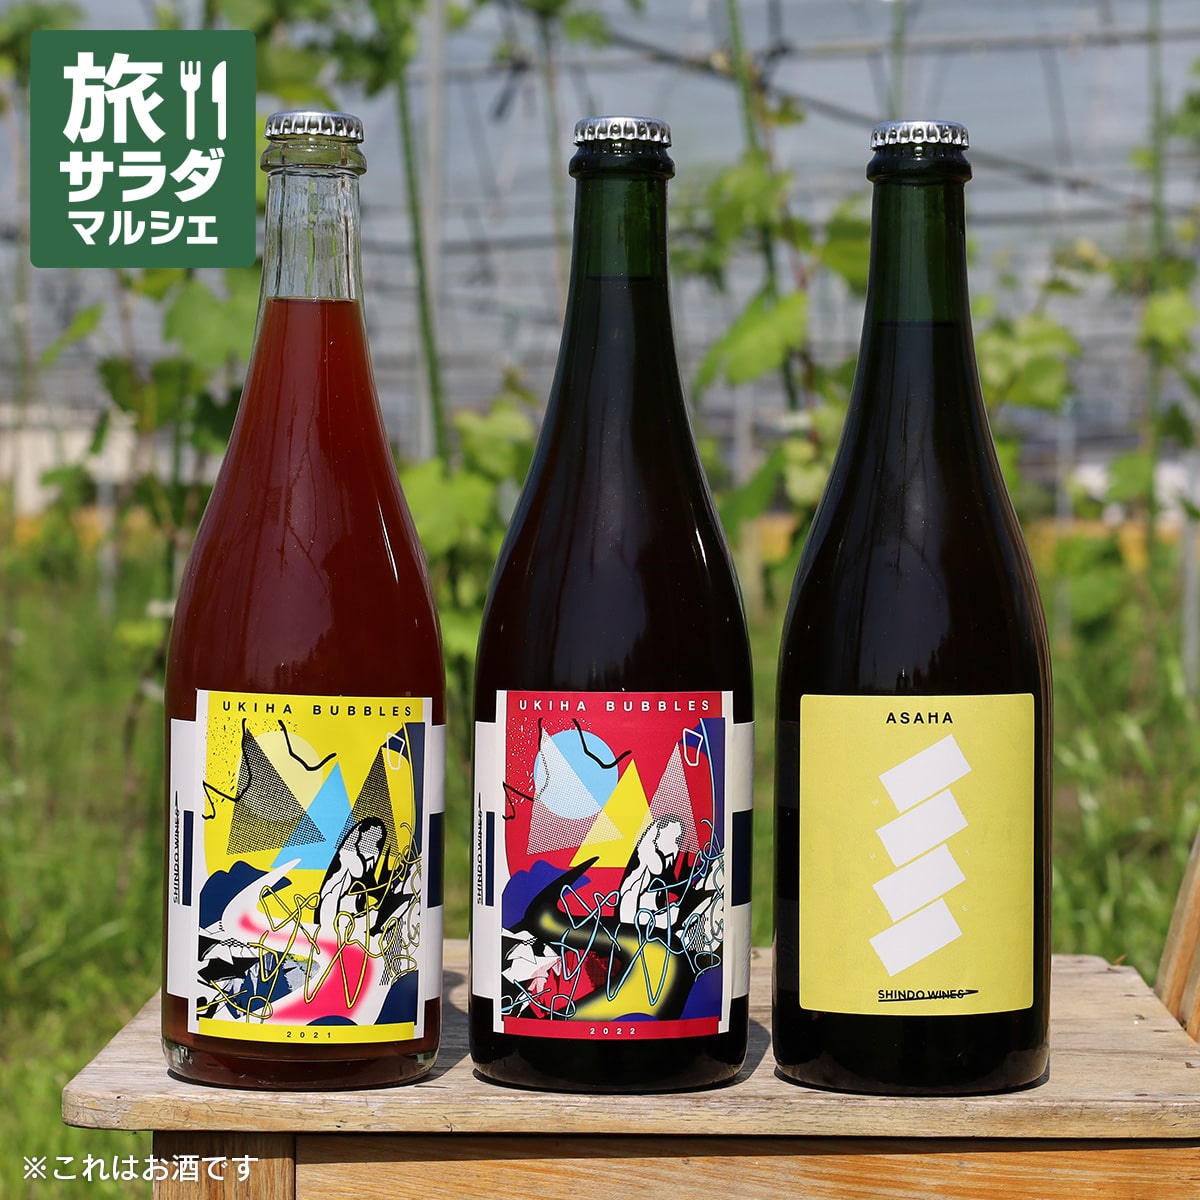 【販売終了】【SHINDO WINES】3種類 飲み比べセット